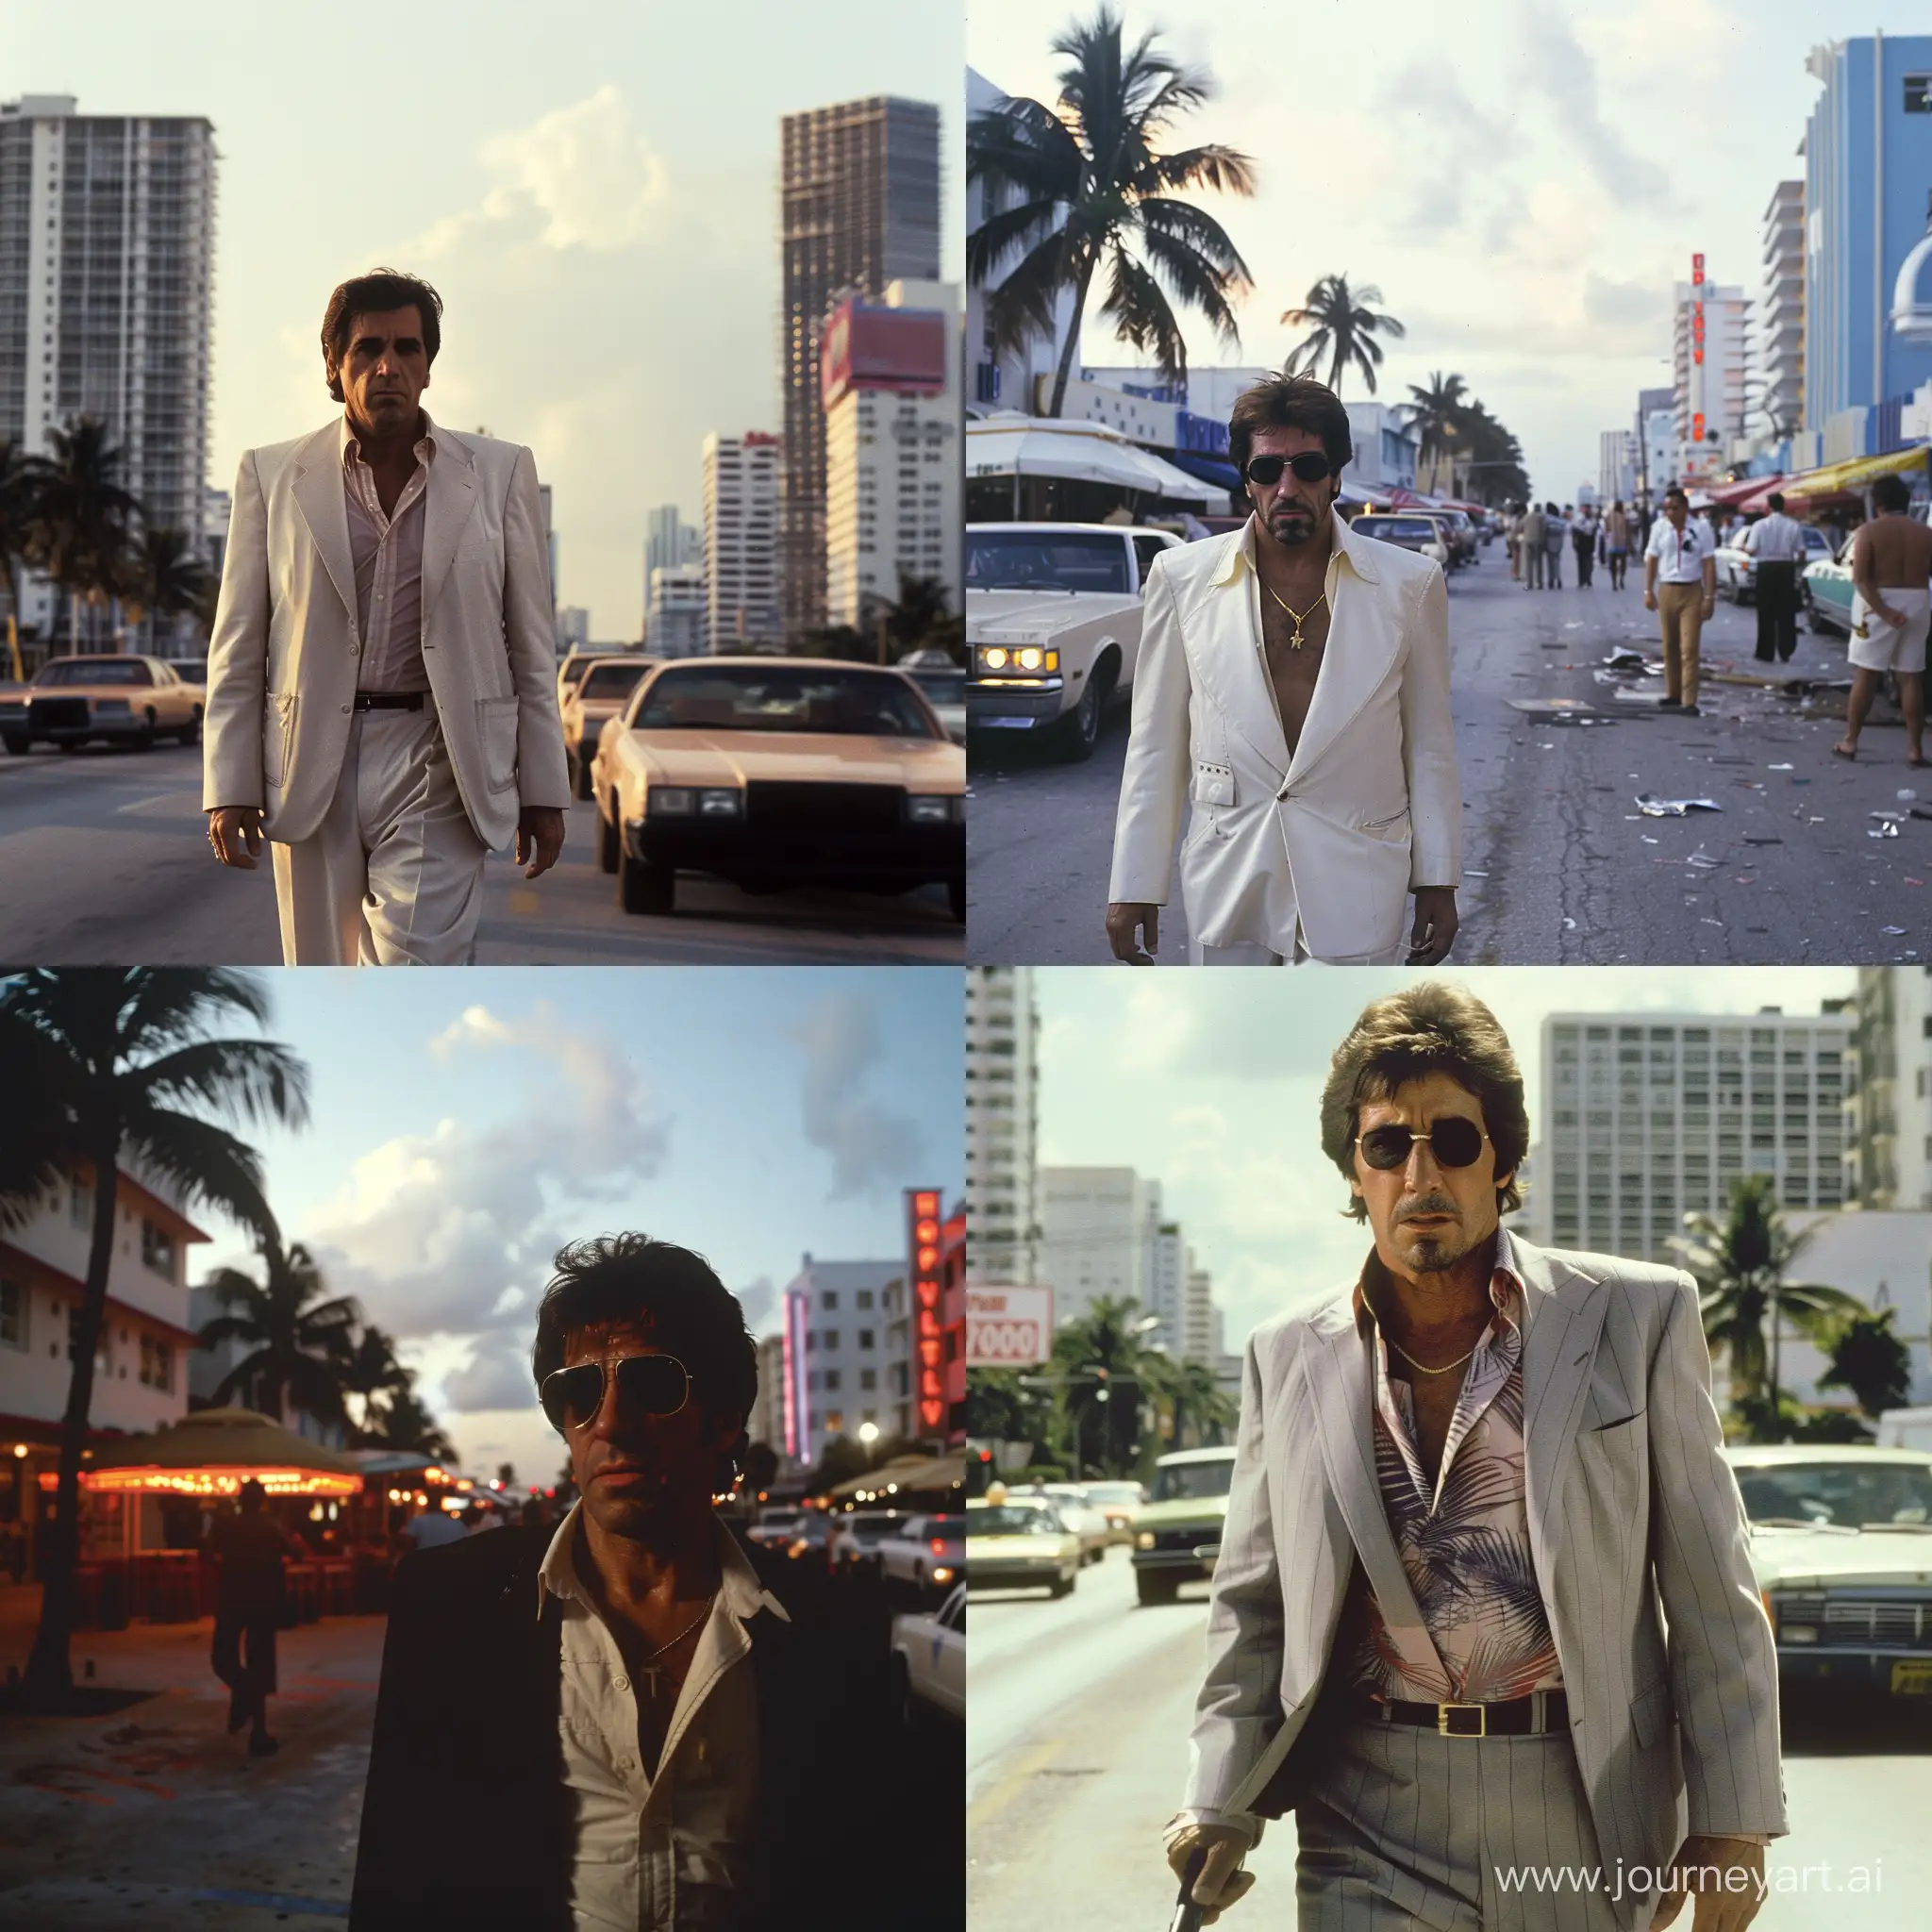 Crea una imagen cinematográfica de una película de John Carpenter de la década de 1980s donde se observa a al Pacino vestido de Tommy vercetti en la ciudad de Miam